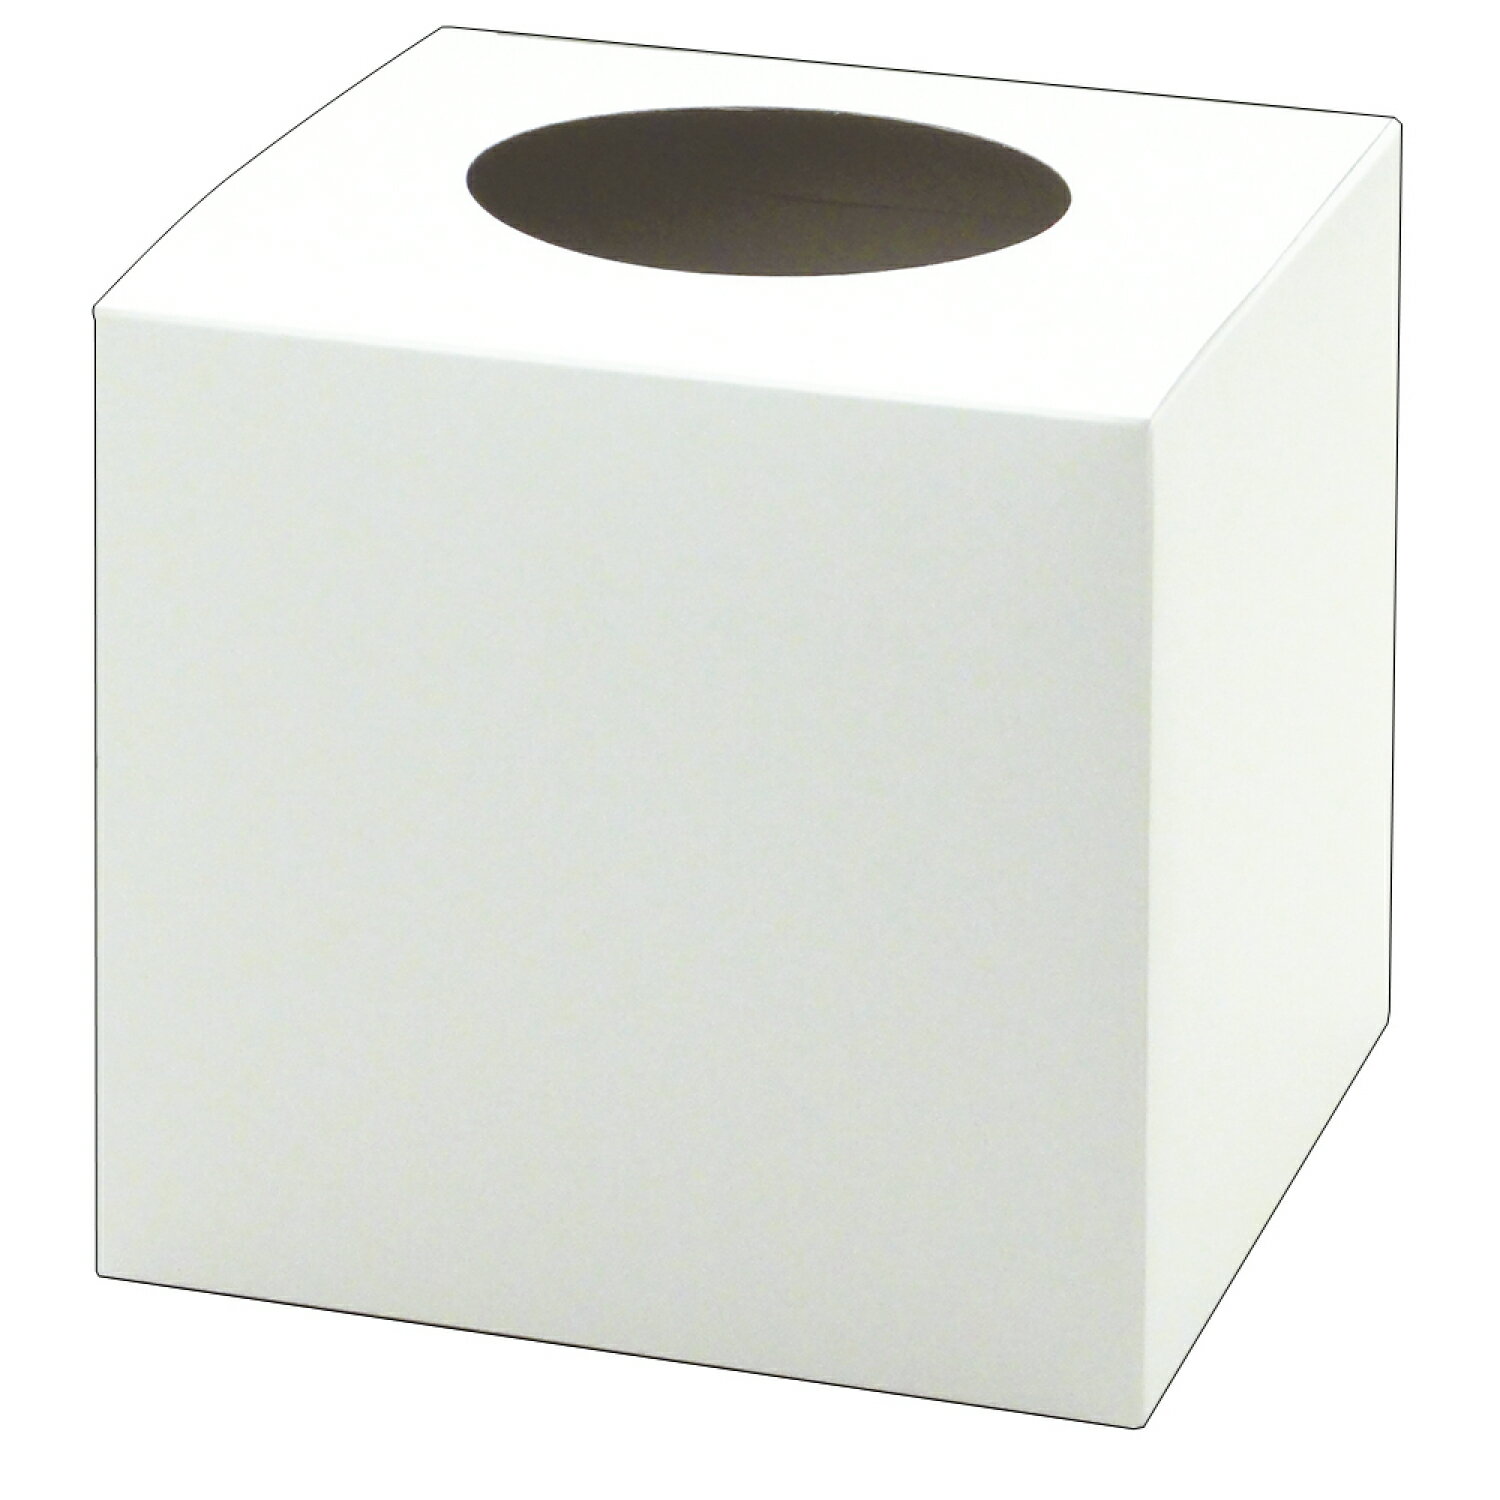 使い勝手のいい、シンプルな無地抽選箱です。紙製の組み立て式抽選箱です。多目的に使える便利な白色。陳列に便利なヘッダ付袋入りです。商品コード00452620メーカー名ササガワサイズ316×180mm、[厚さ]400g/平米材質コートボール紙重量100.00g種別本体のみ・注意事項：モニターの発色によって色が異なって見える場合がございます。・領収書については、楽天お客様マイページから、商品出荷後にお客様自身で印刷して頂きますようお願い申し上げます。・本店では一つの注文に対して、複数の送り先を指定することができません。お手数おかけしますが、注文を分けていただきます様お願い致します。・支払い方法で前払いを指定されて、支払いまで日数が空く場合、商品が廃番もしくは欠品になる恐れがございます。ご了承ください。・注文が重なった場合、発送予定日が遅れる可能性がございます。ご了承ください。・お急ぎの場合はなるべく支払い方法で前払い以外を選択いただきます様お願い致します。支払い時期によっては希望納期に間に合わない場合がございます。